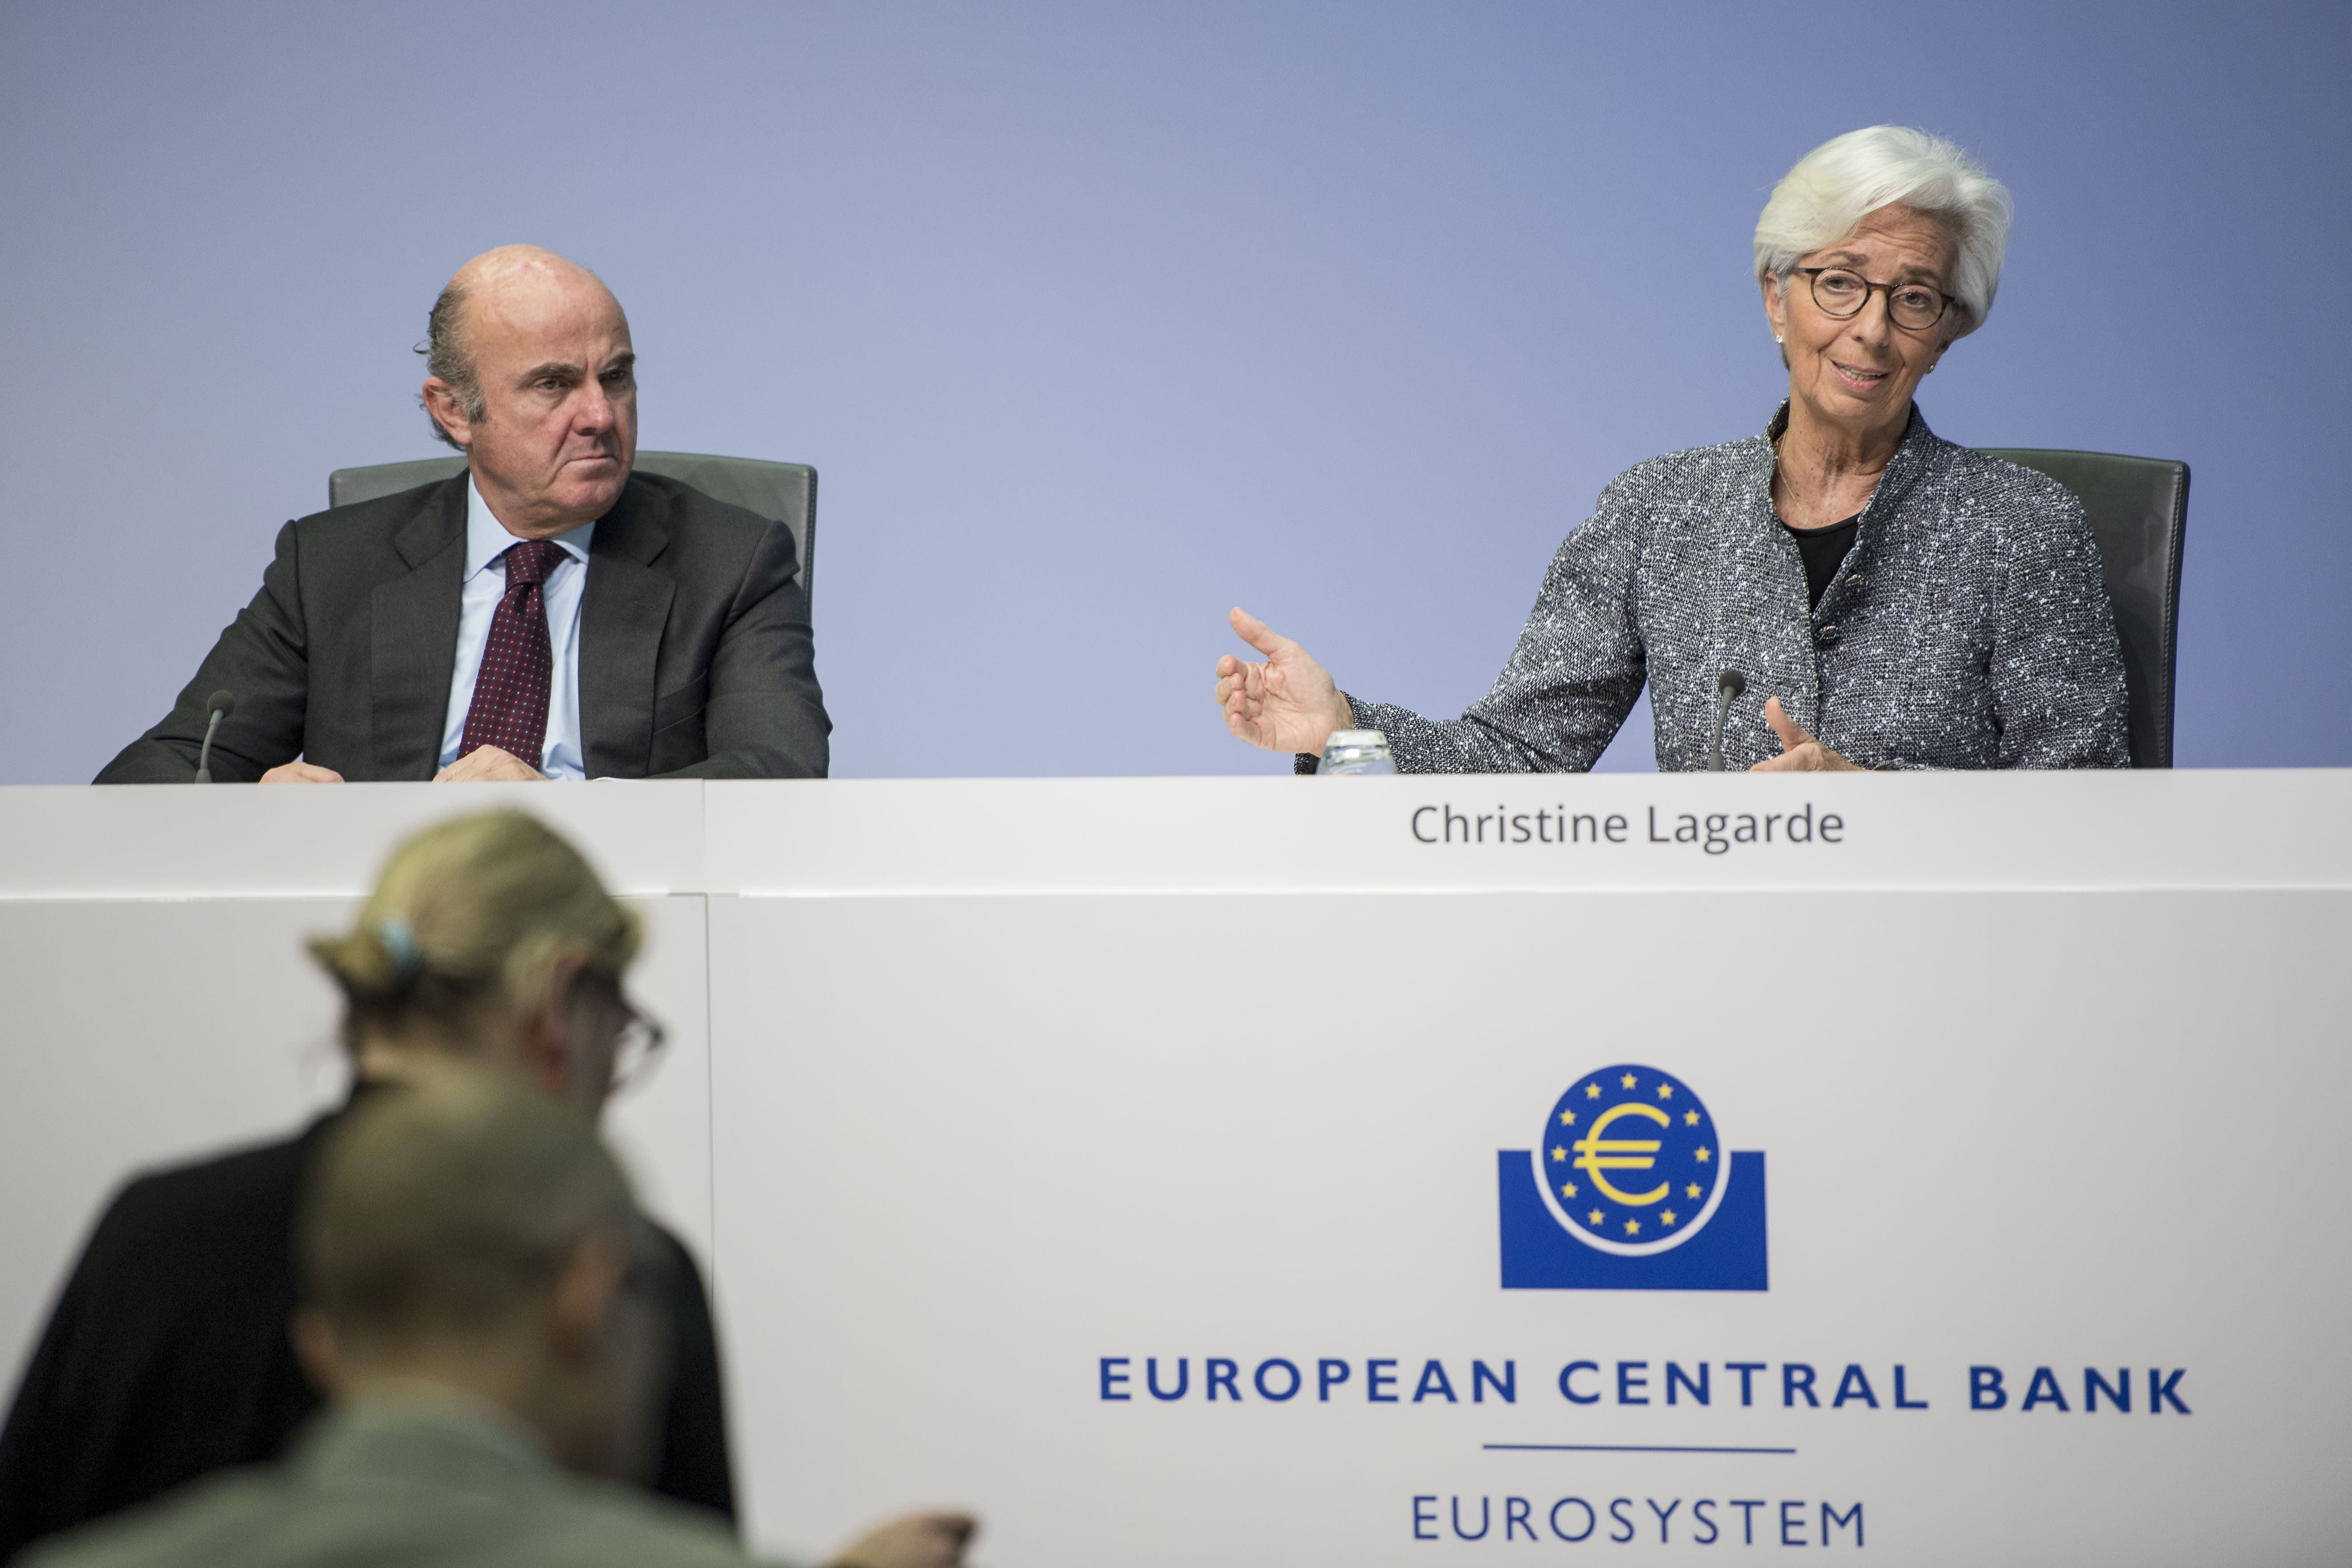 De Guindos von der Europäischen Zentralbank warnt davor, dass die Finanzmärkte anfällig für einen Ausverkauf seien